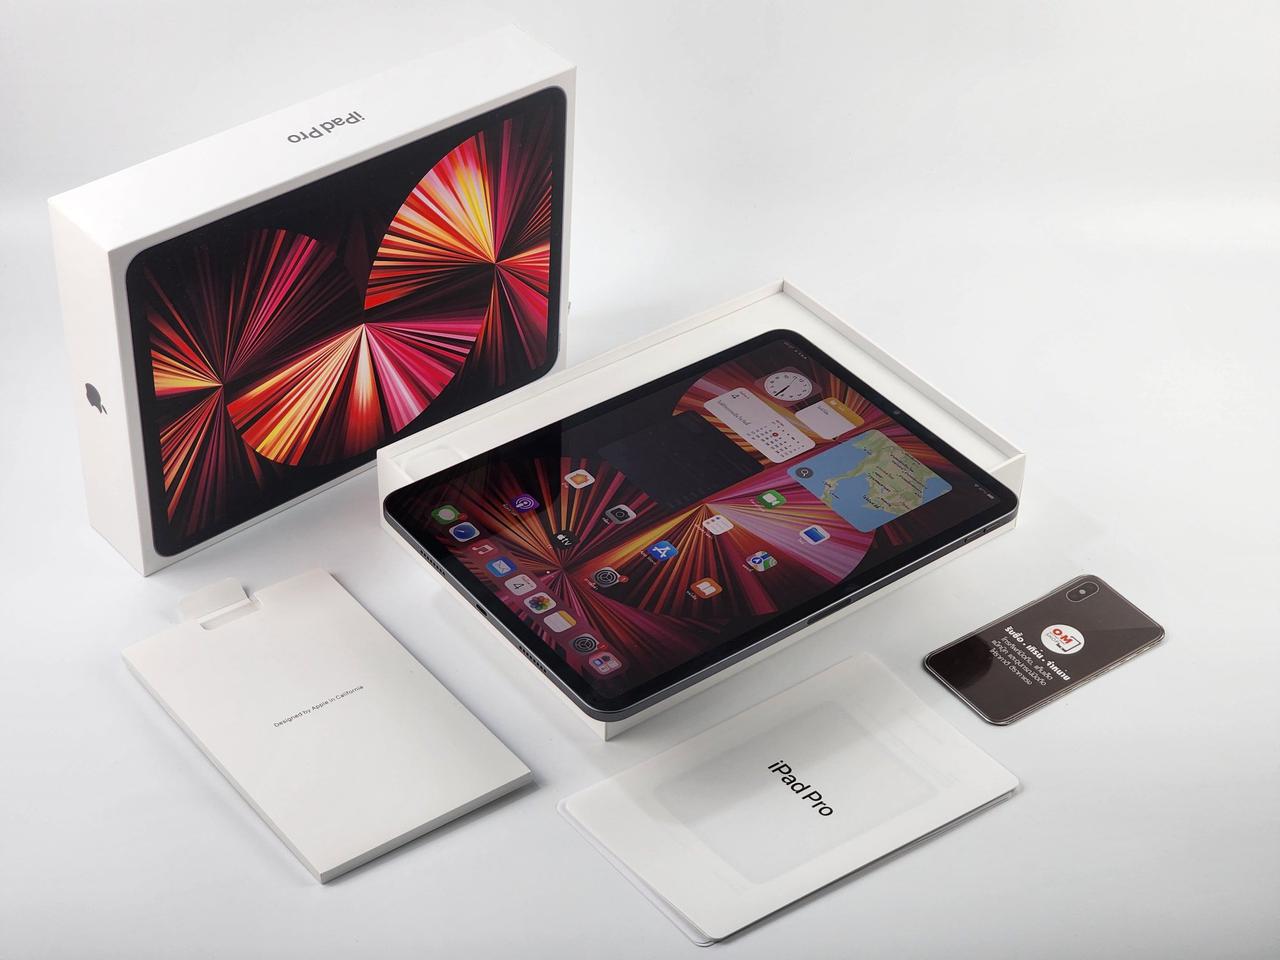 ขาย/แลก iPad Pro 11inch M1 128GB Wifi สี Gray ศูนย์ไทย สภาพสวยมาก แท้ ครบยกกล่อง เพียง 20,900 บาท